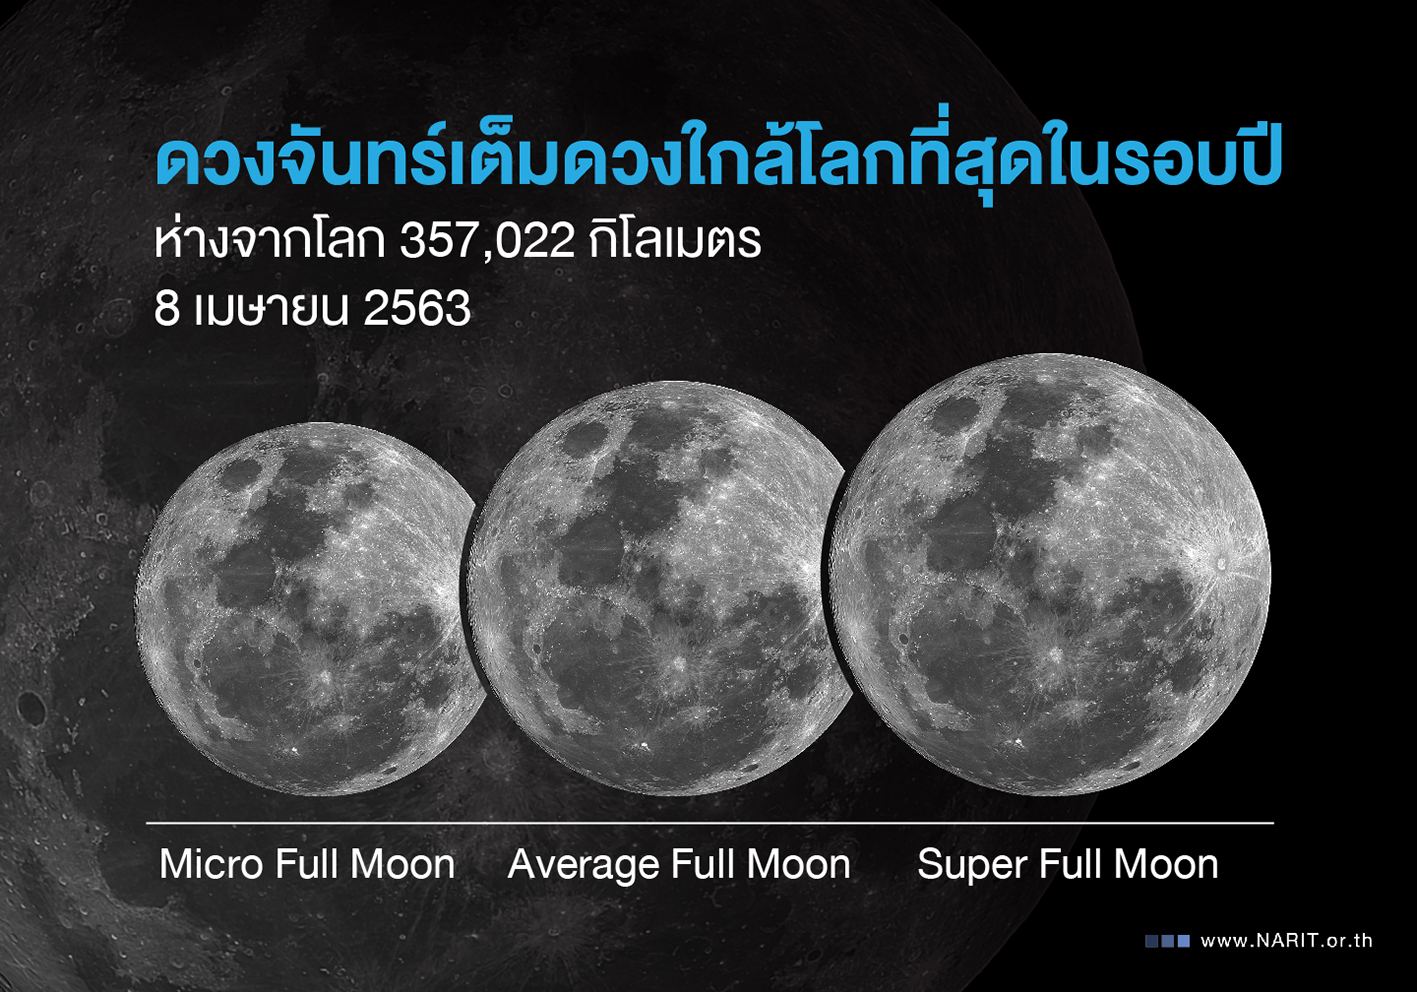 สดร. เผย 8 เมษายนนี้ “ดวงจันทร์เต็มดวงใกล้โลกที่สุดในรอบปี”